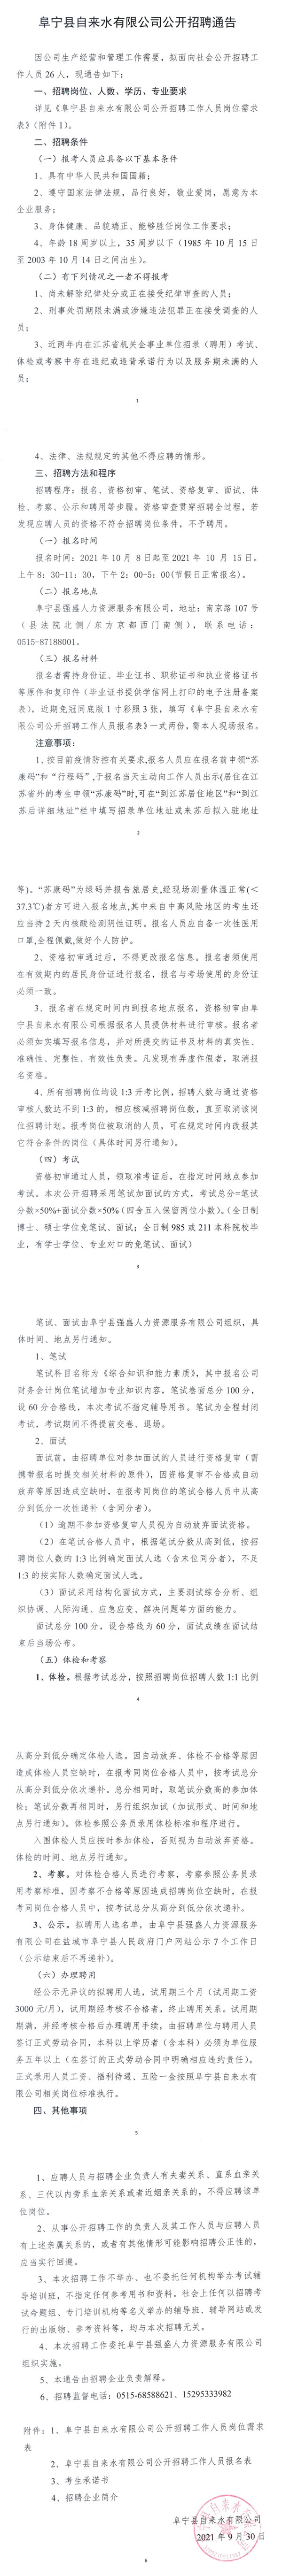 阜宁县自来水有限公司招聘工作人员26名